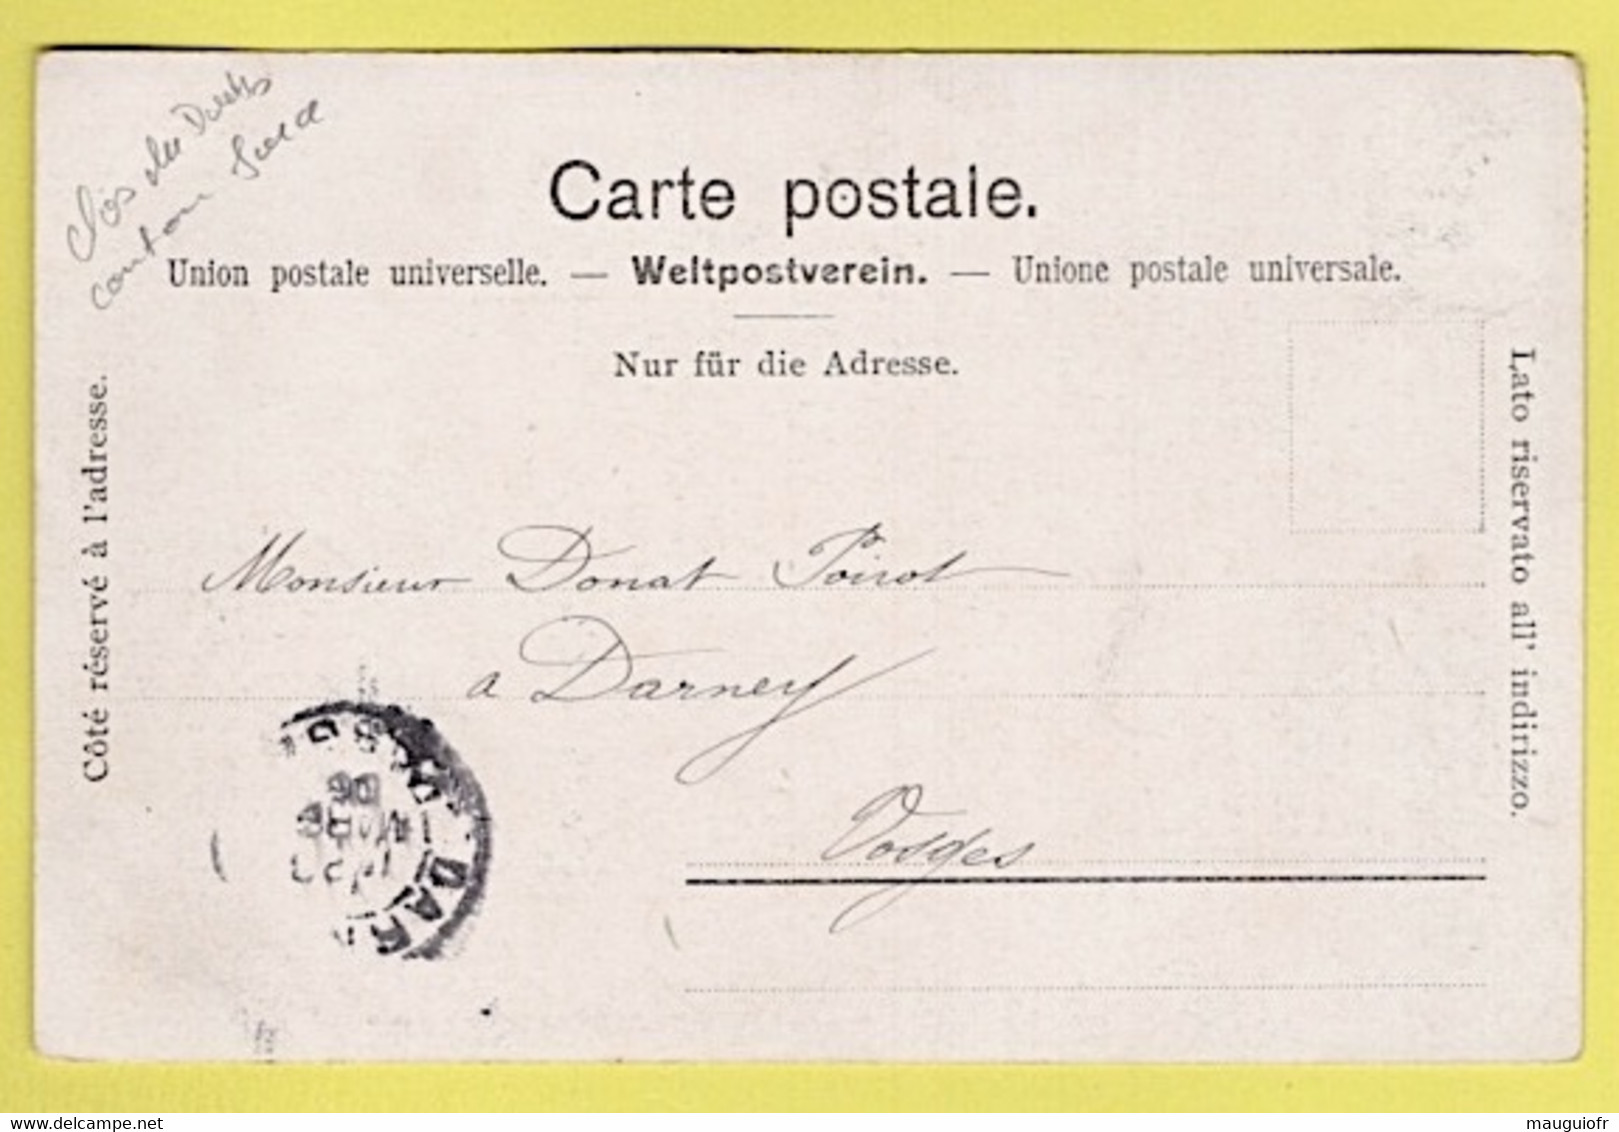 SUISSE / CANTON DU JURA / CLOS DU DOUBS / ST-URSANNE / VUE GENERALE / 1906 - Saint-Ursanne